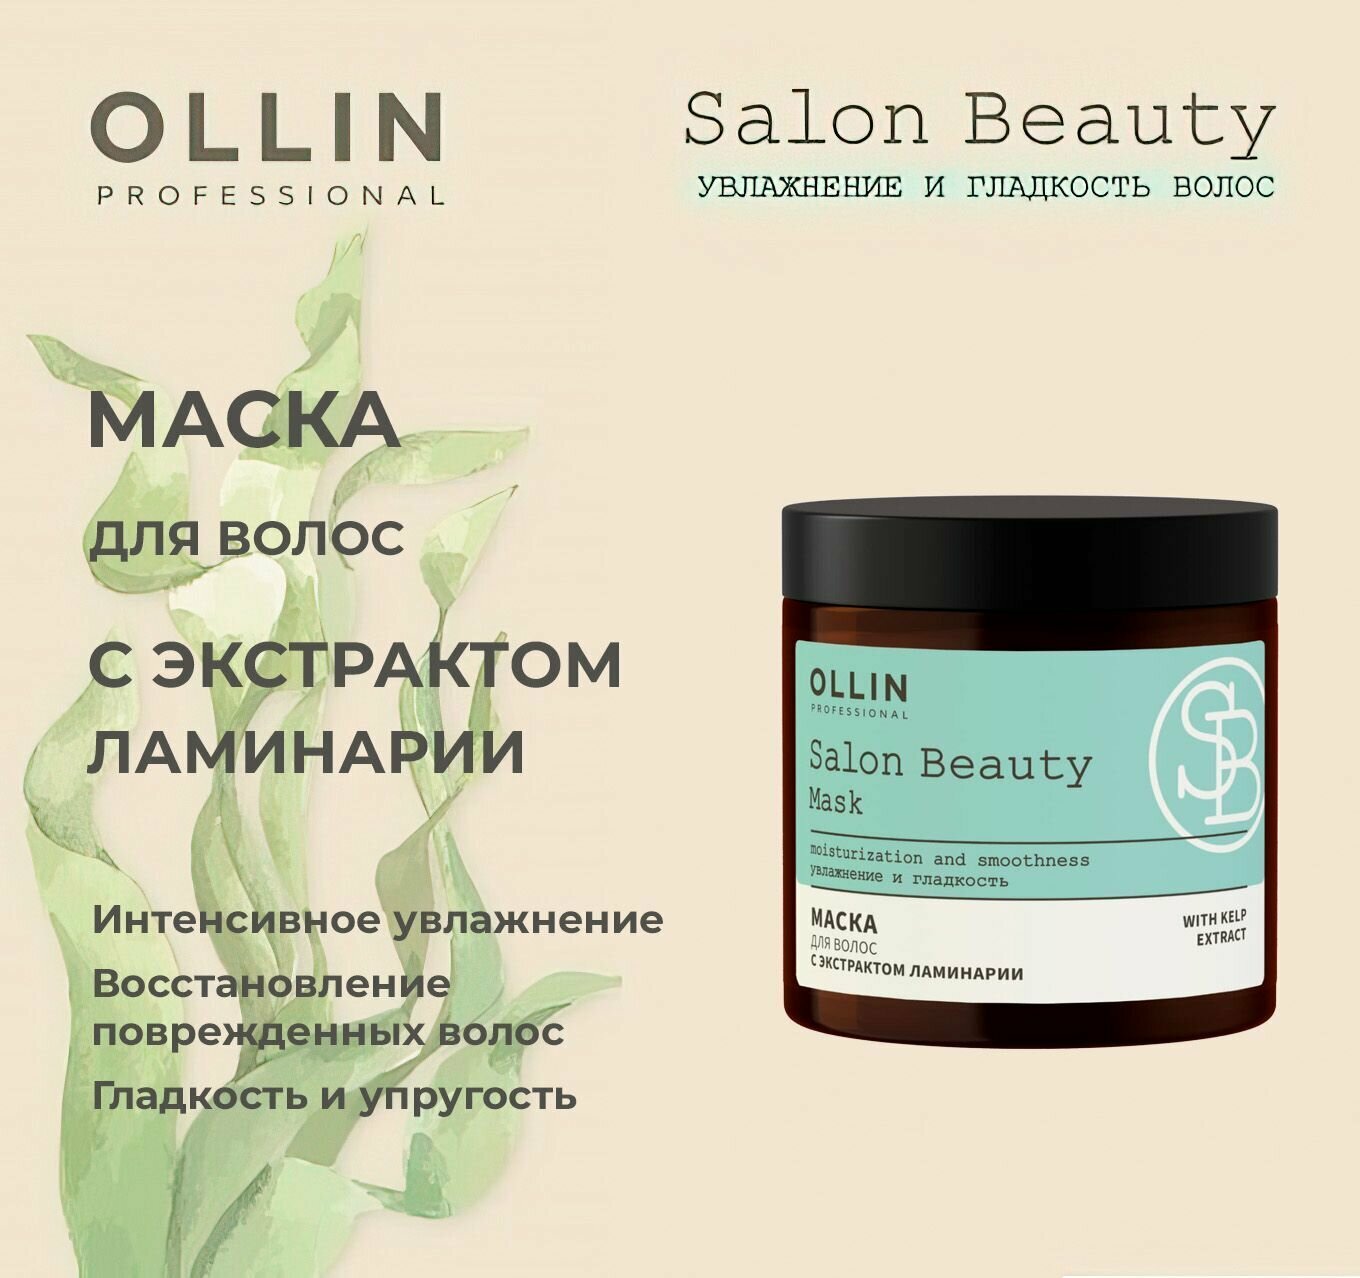 Ollin Professional Маска для волос с экстрактом ламинарии, 500 мл (Ollin Professional, ) - фото №16